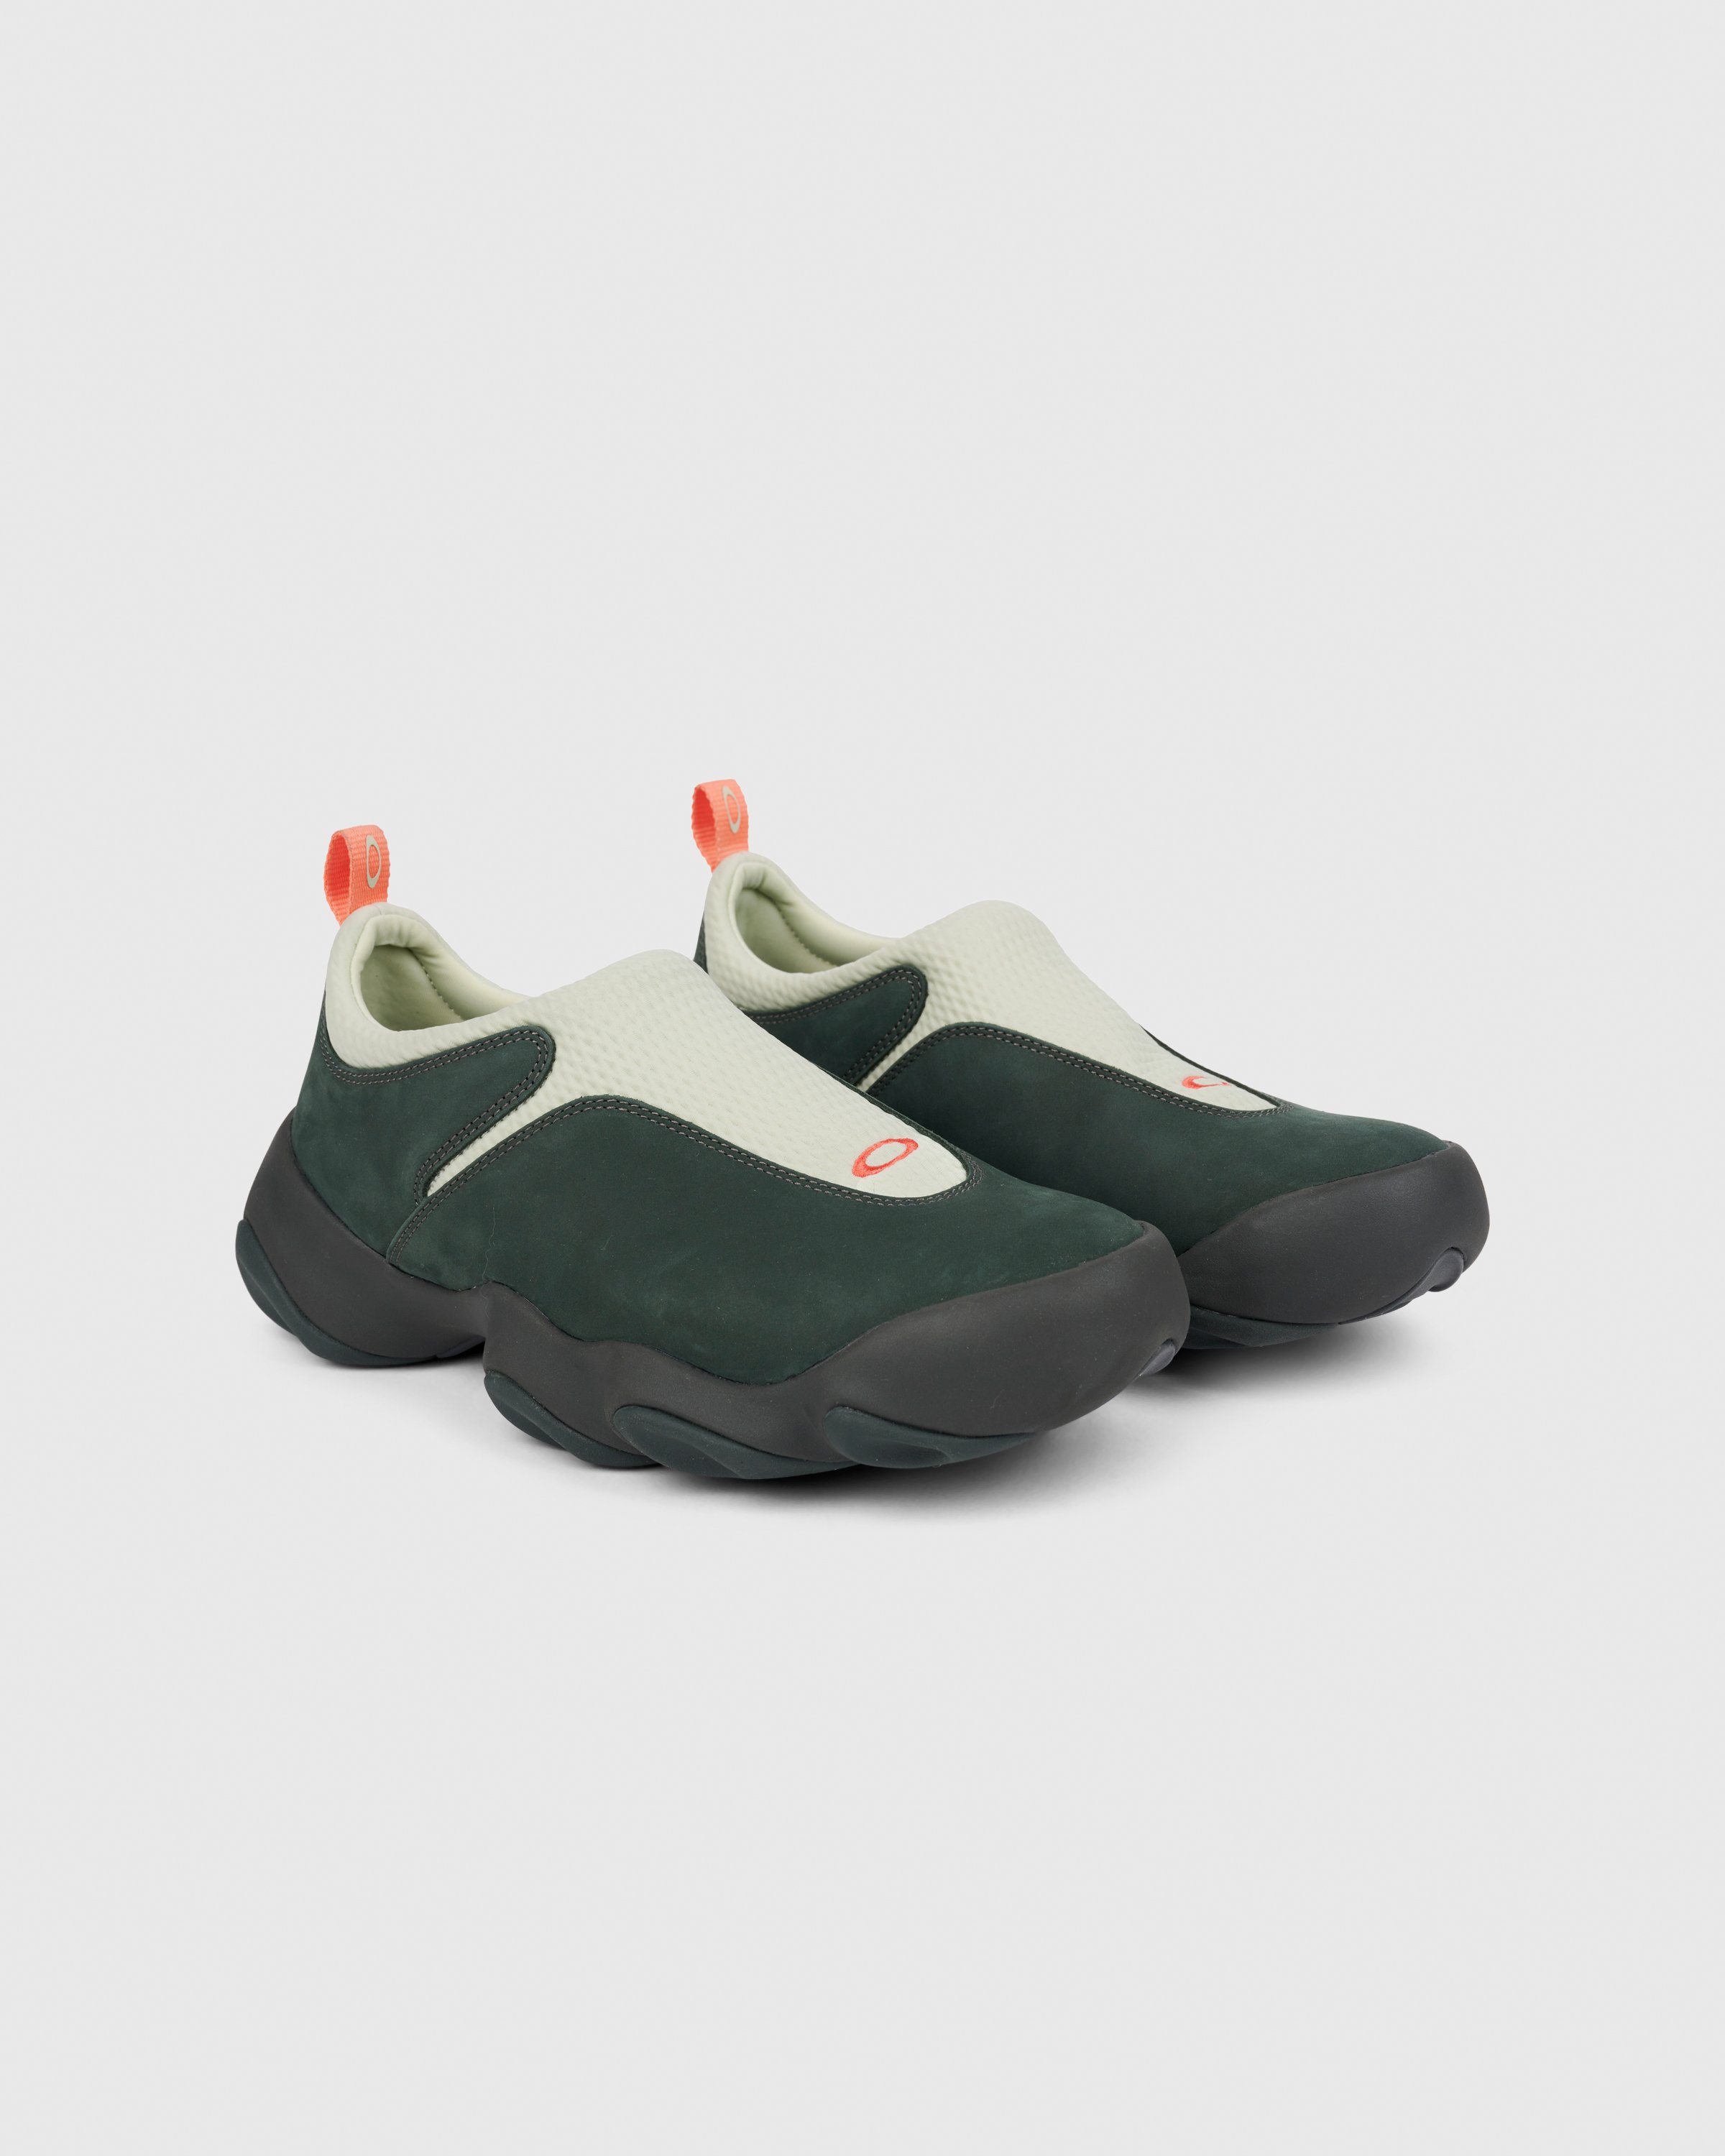 Oakley Factory Team - Flesh Meadow/Scarab Green - Footwear - Green - Image 2